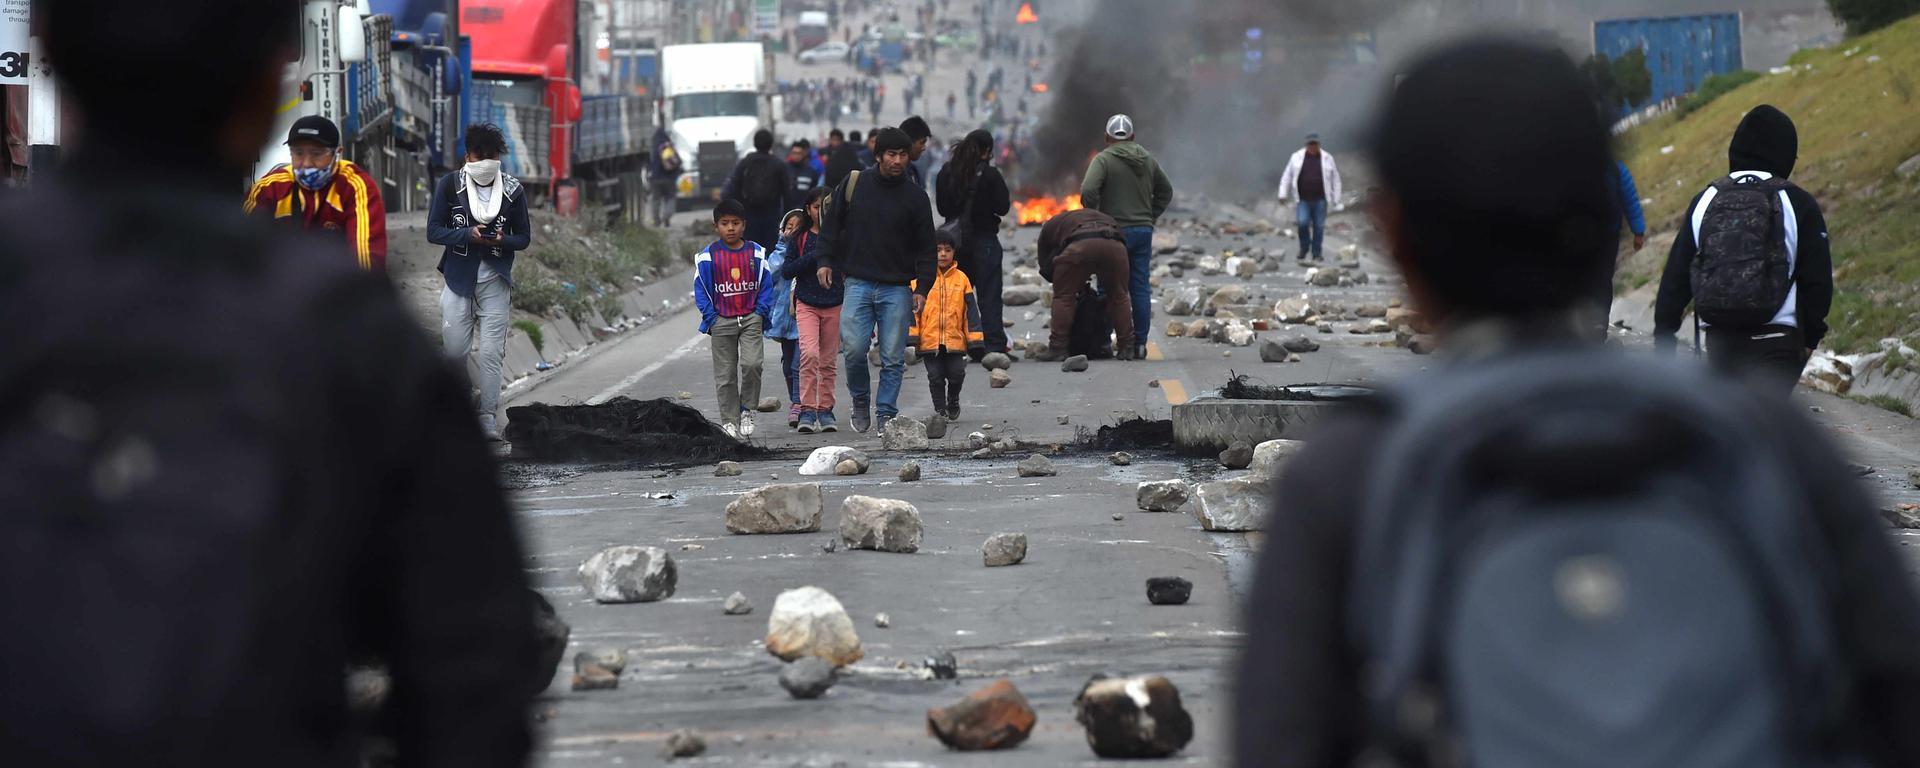 Ayer el Perú registró la cifra más alta de vías bloqueadas: así fue la jornada de protestas del 12 de enero